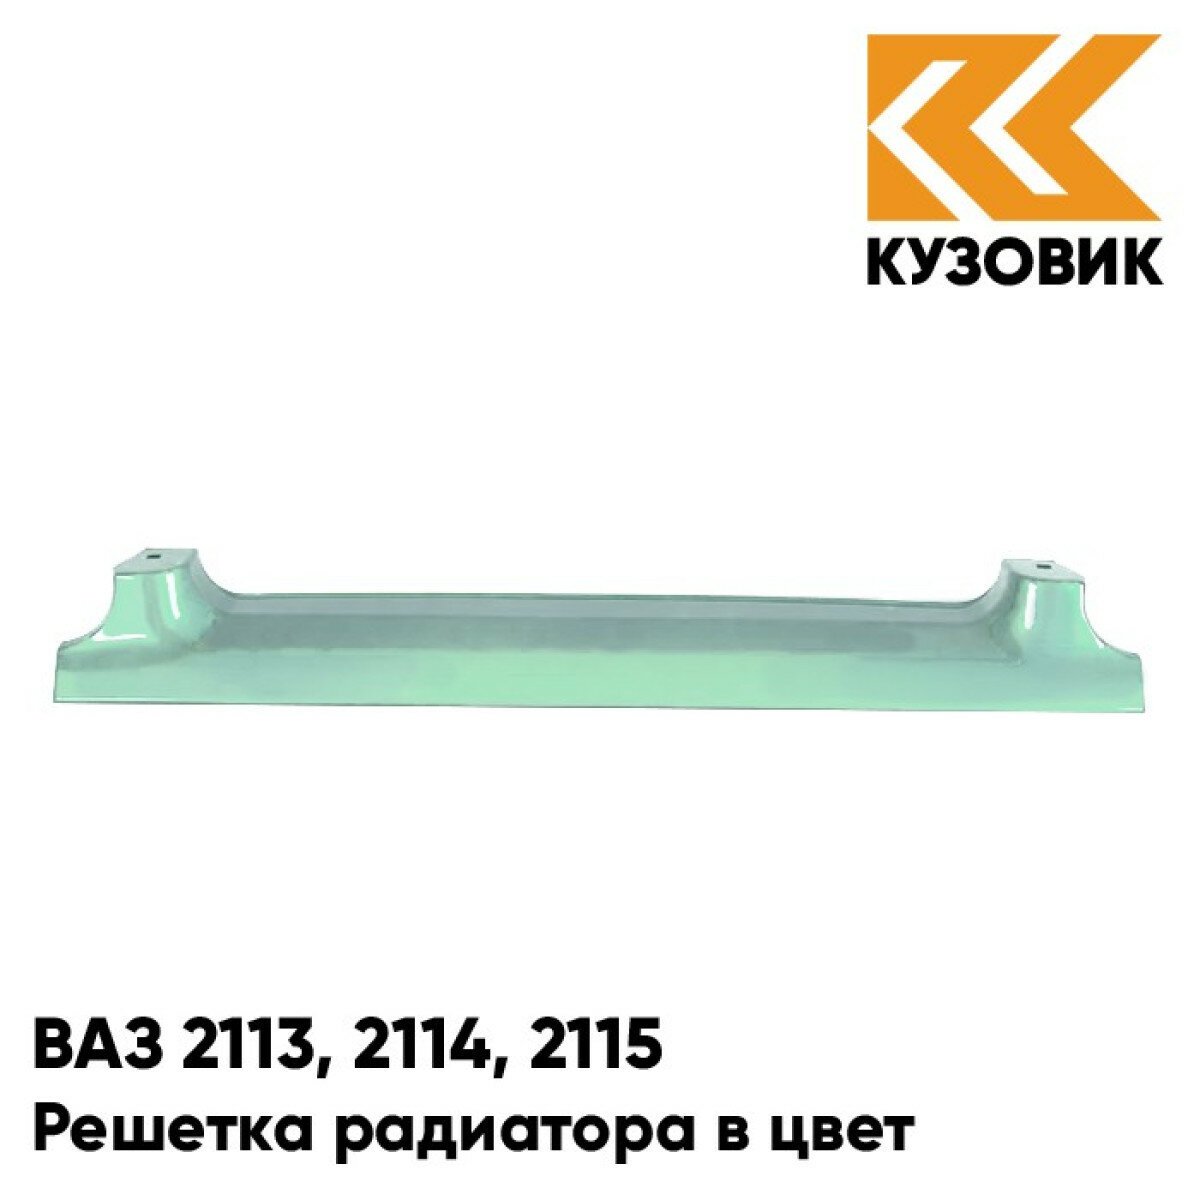 Решетка радиатора в цвет ВАЗ 2113 2114 2115 421 - Афалина - Зеленый